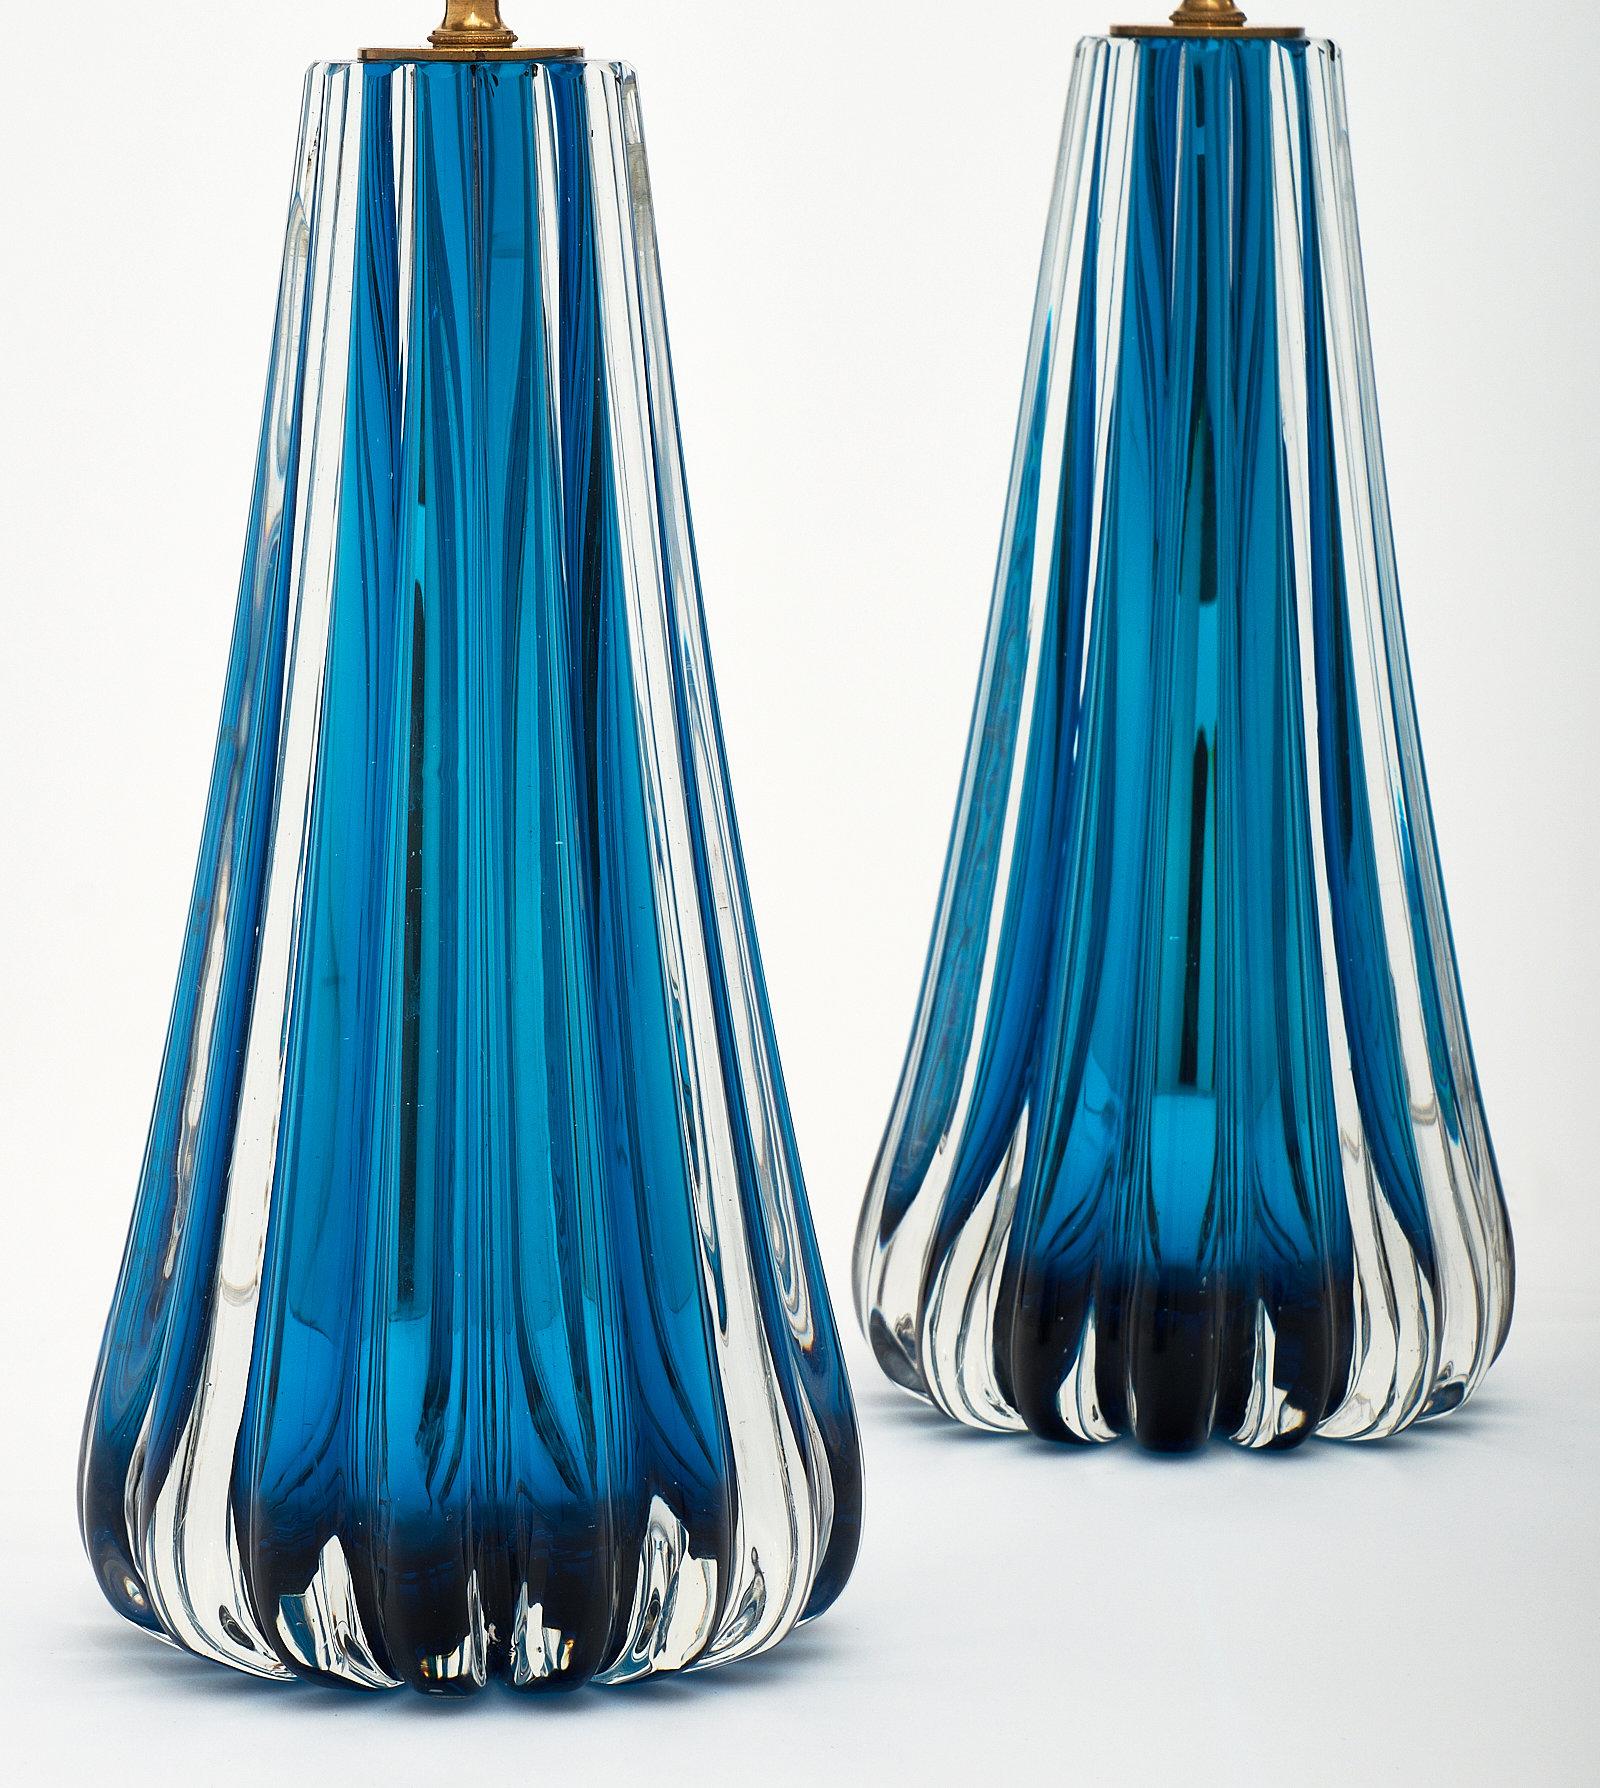 aqua glass lamps